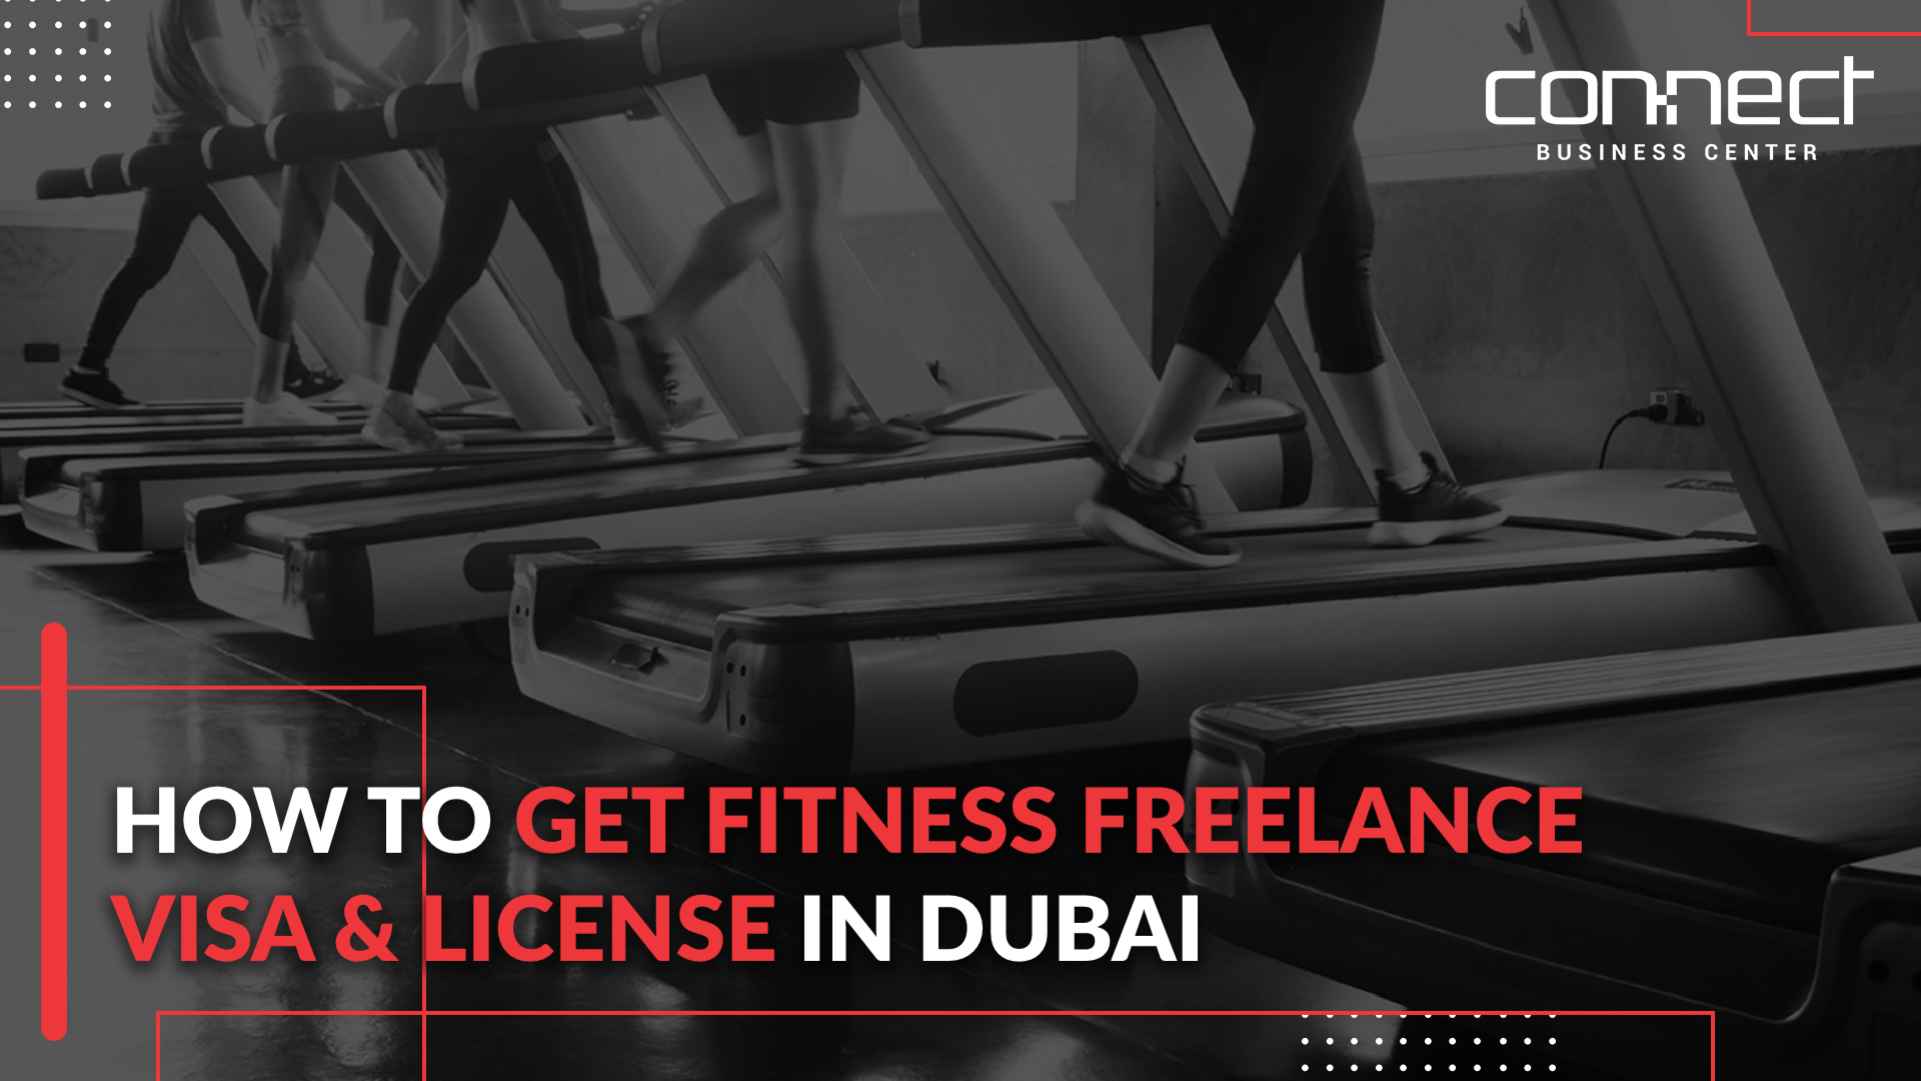 Fitness Freelance Visa in Dubai